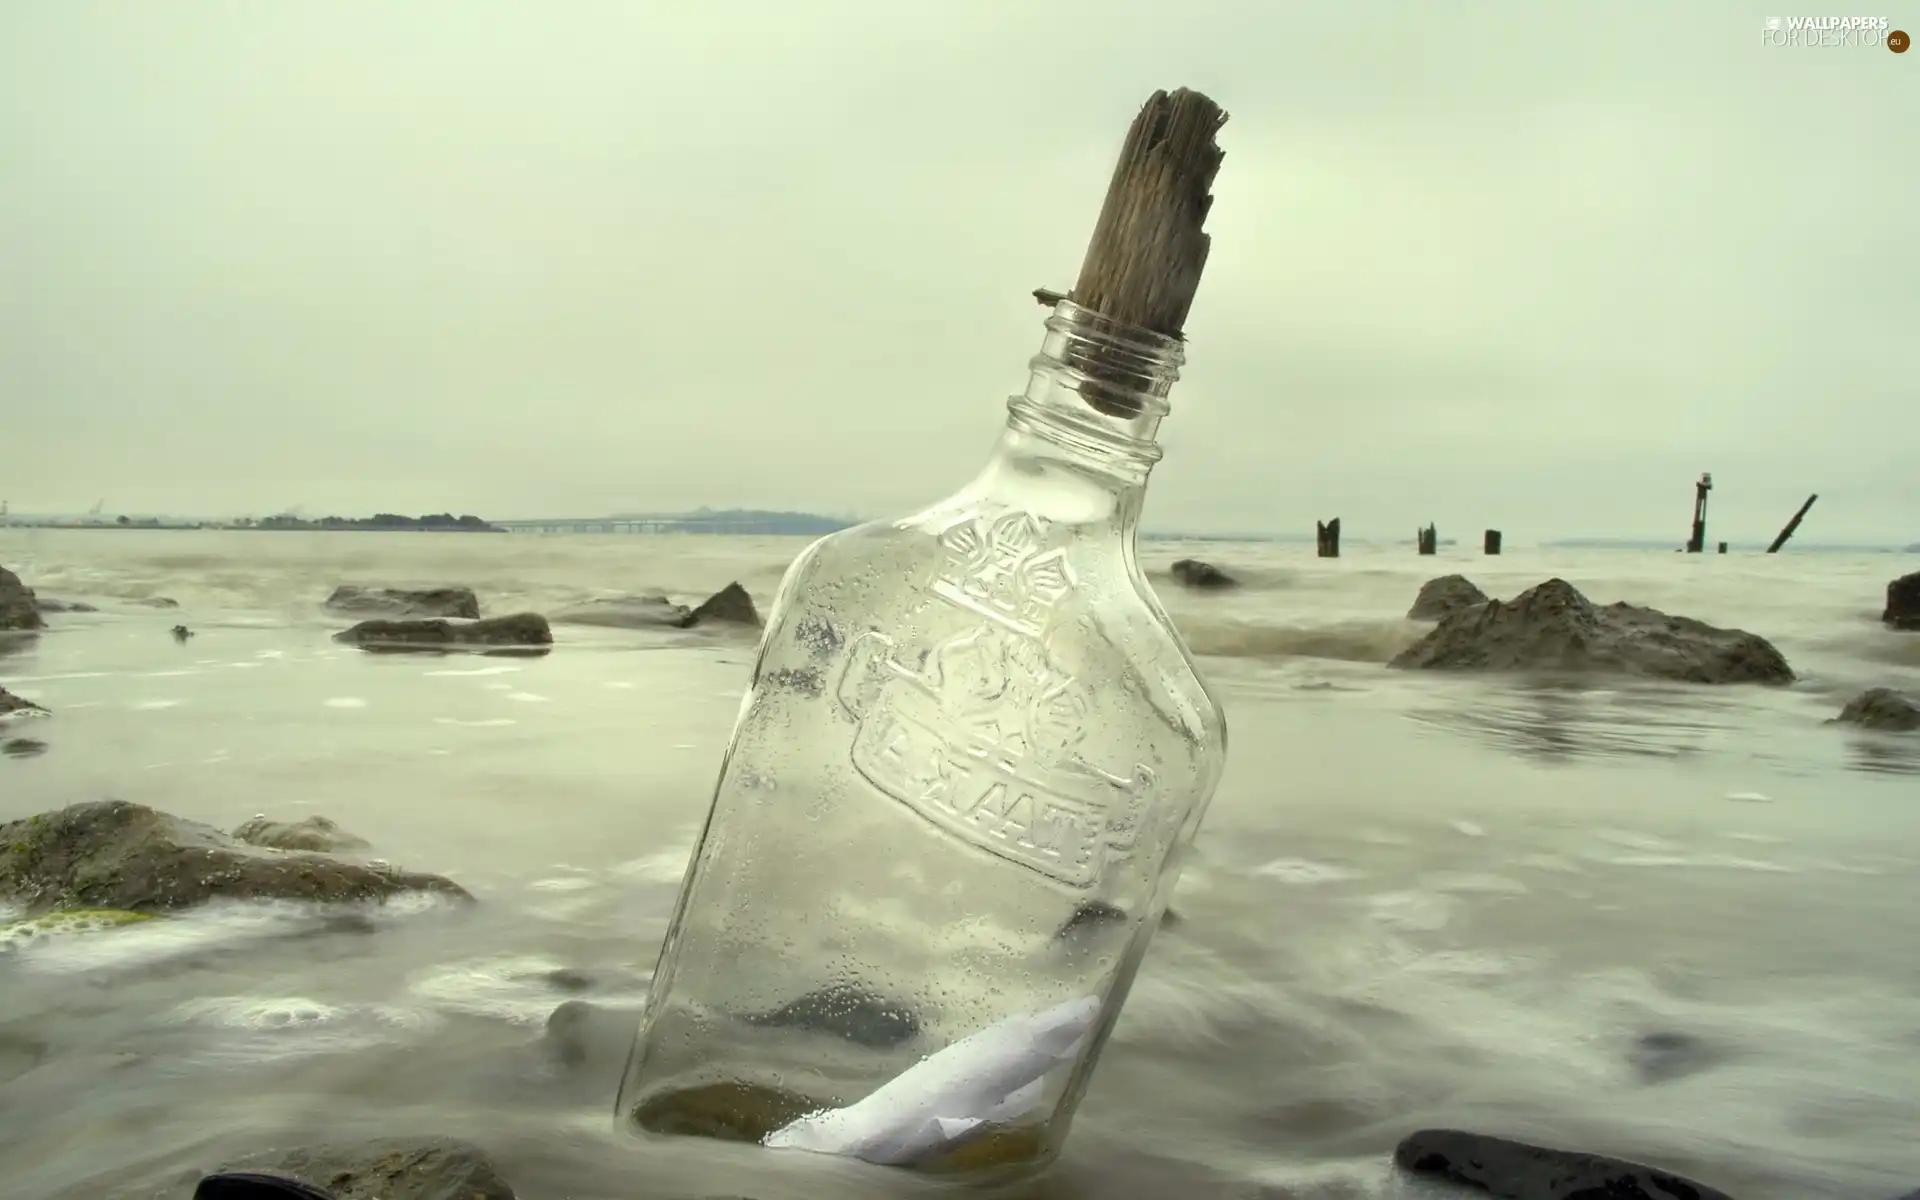 sea, Bottle, cork